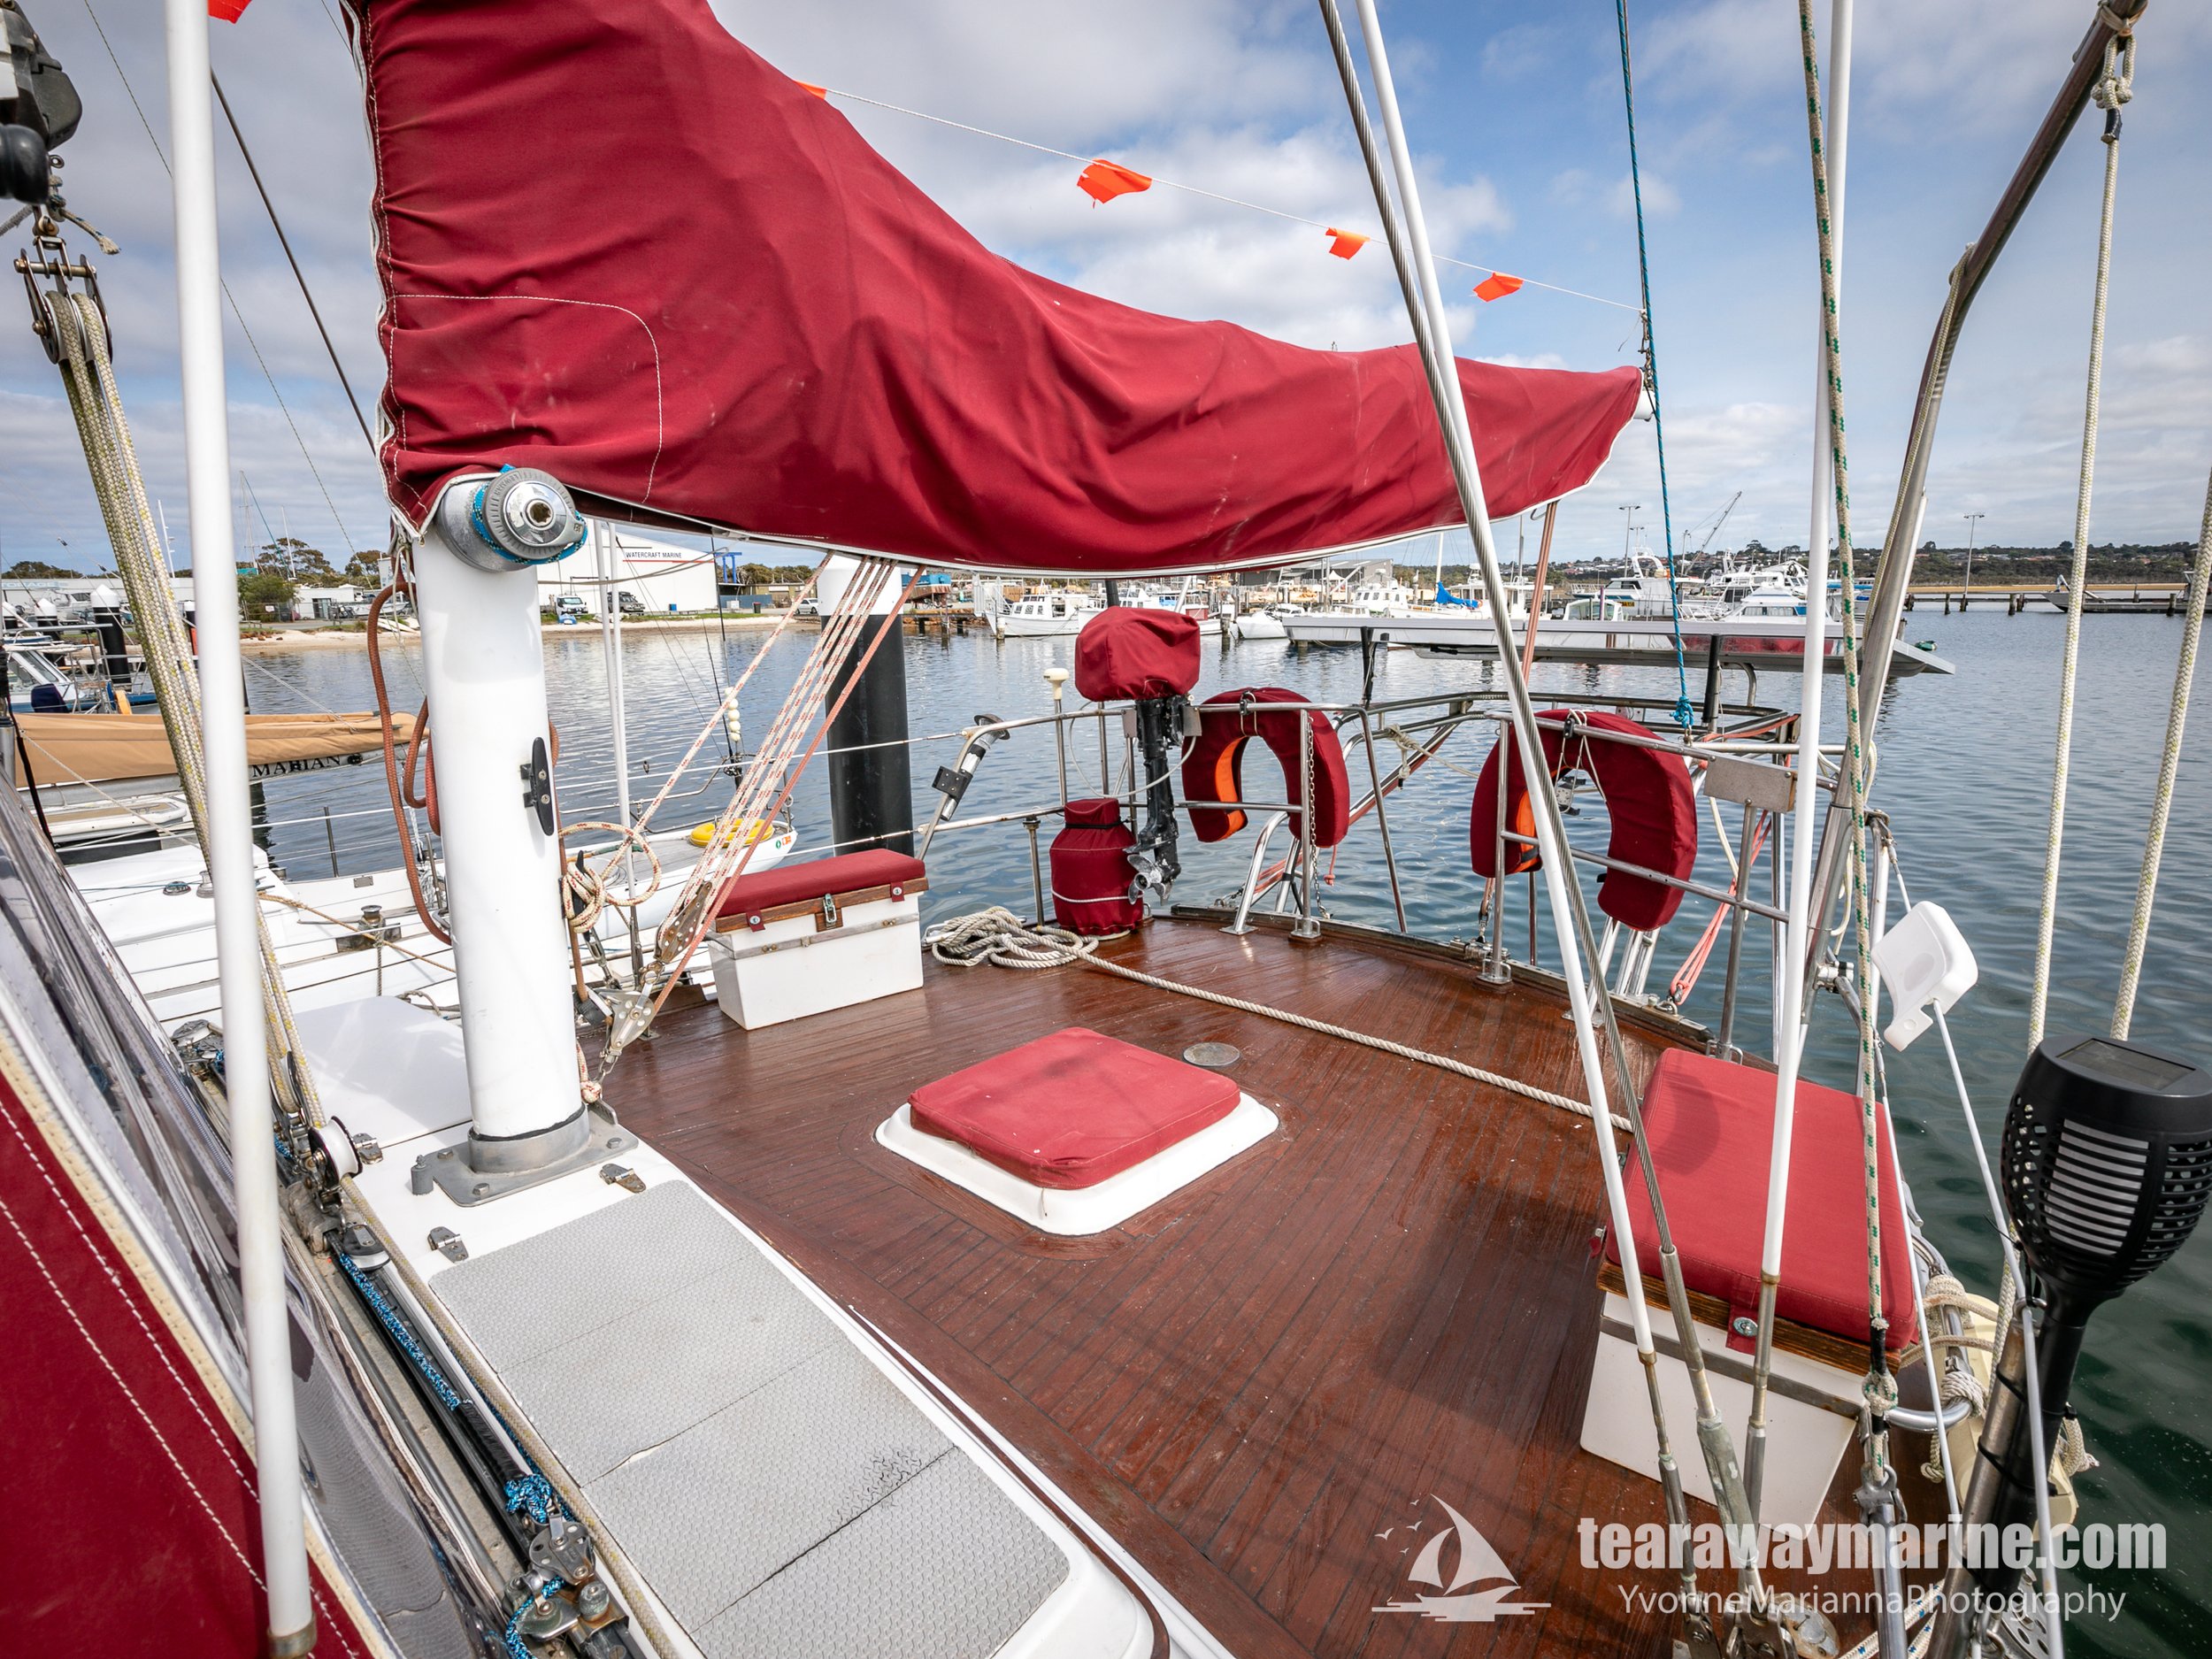 Calypso Yacht Tearaway Marine - Yvonne Marianna Photography-27.jpg